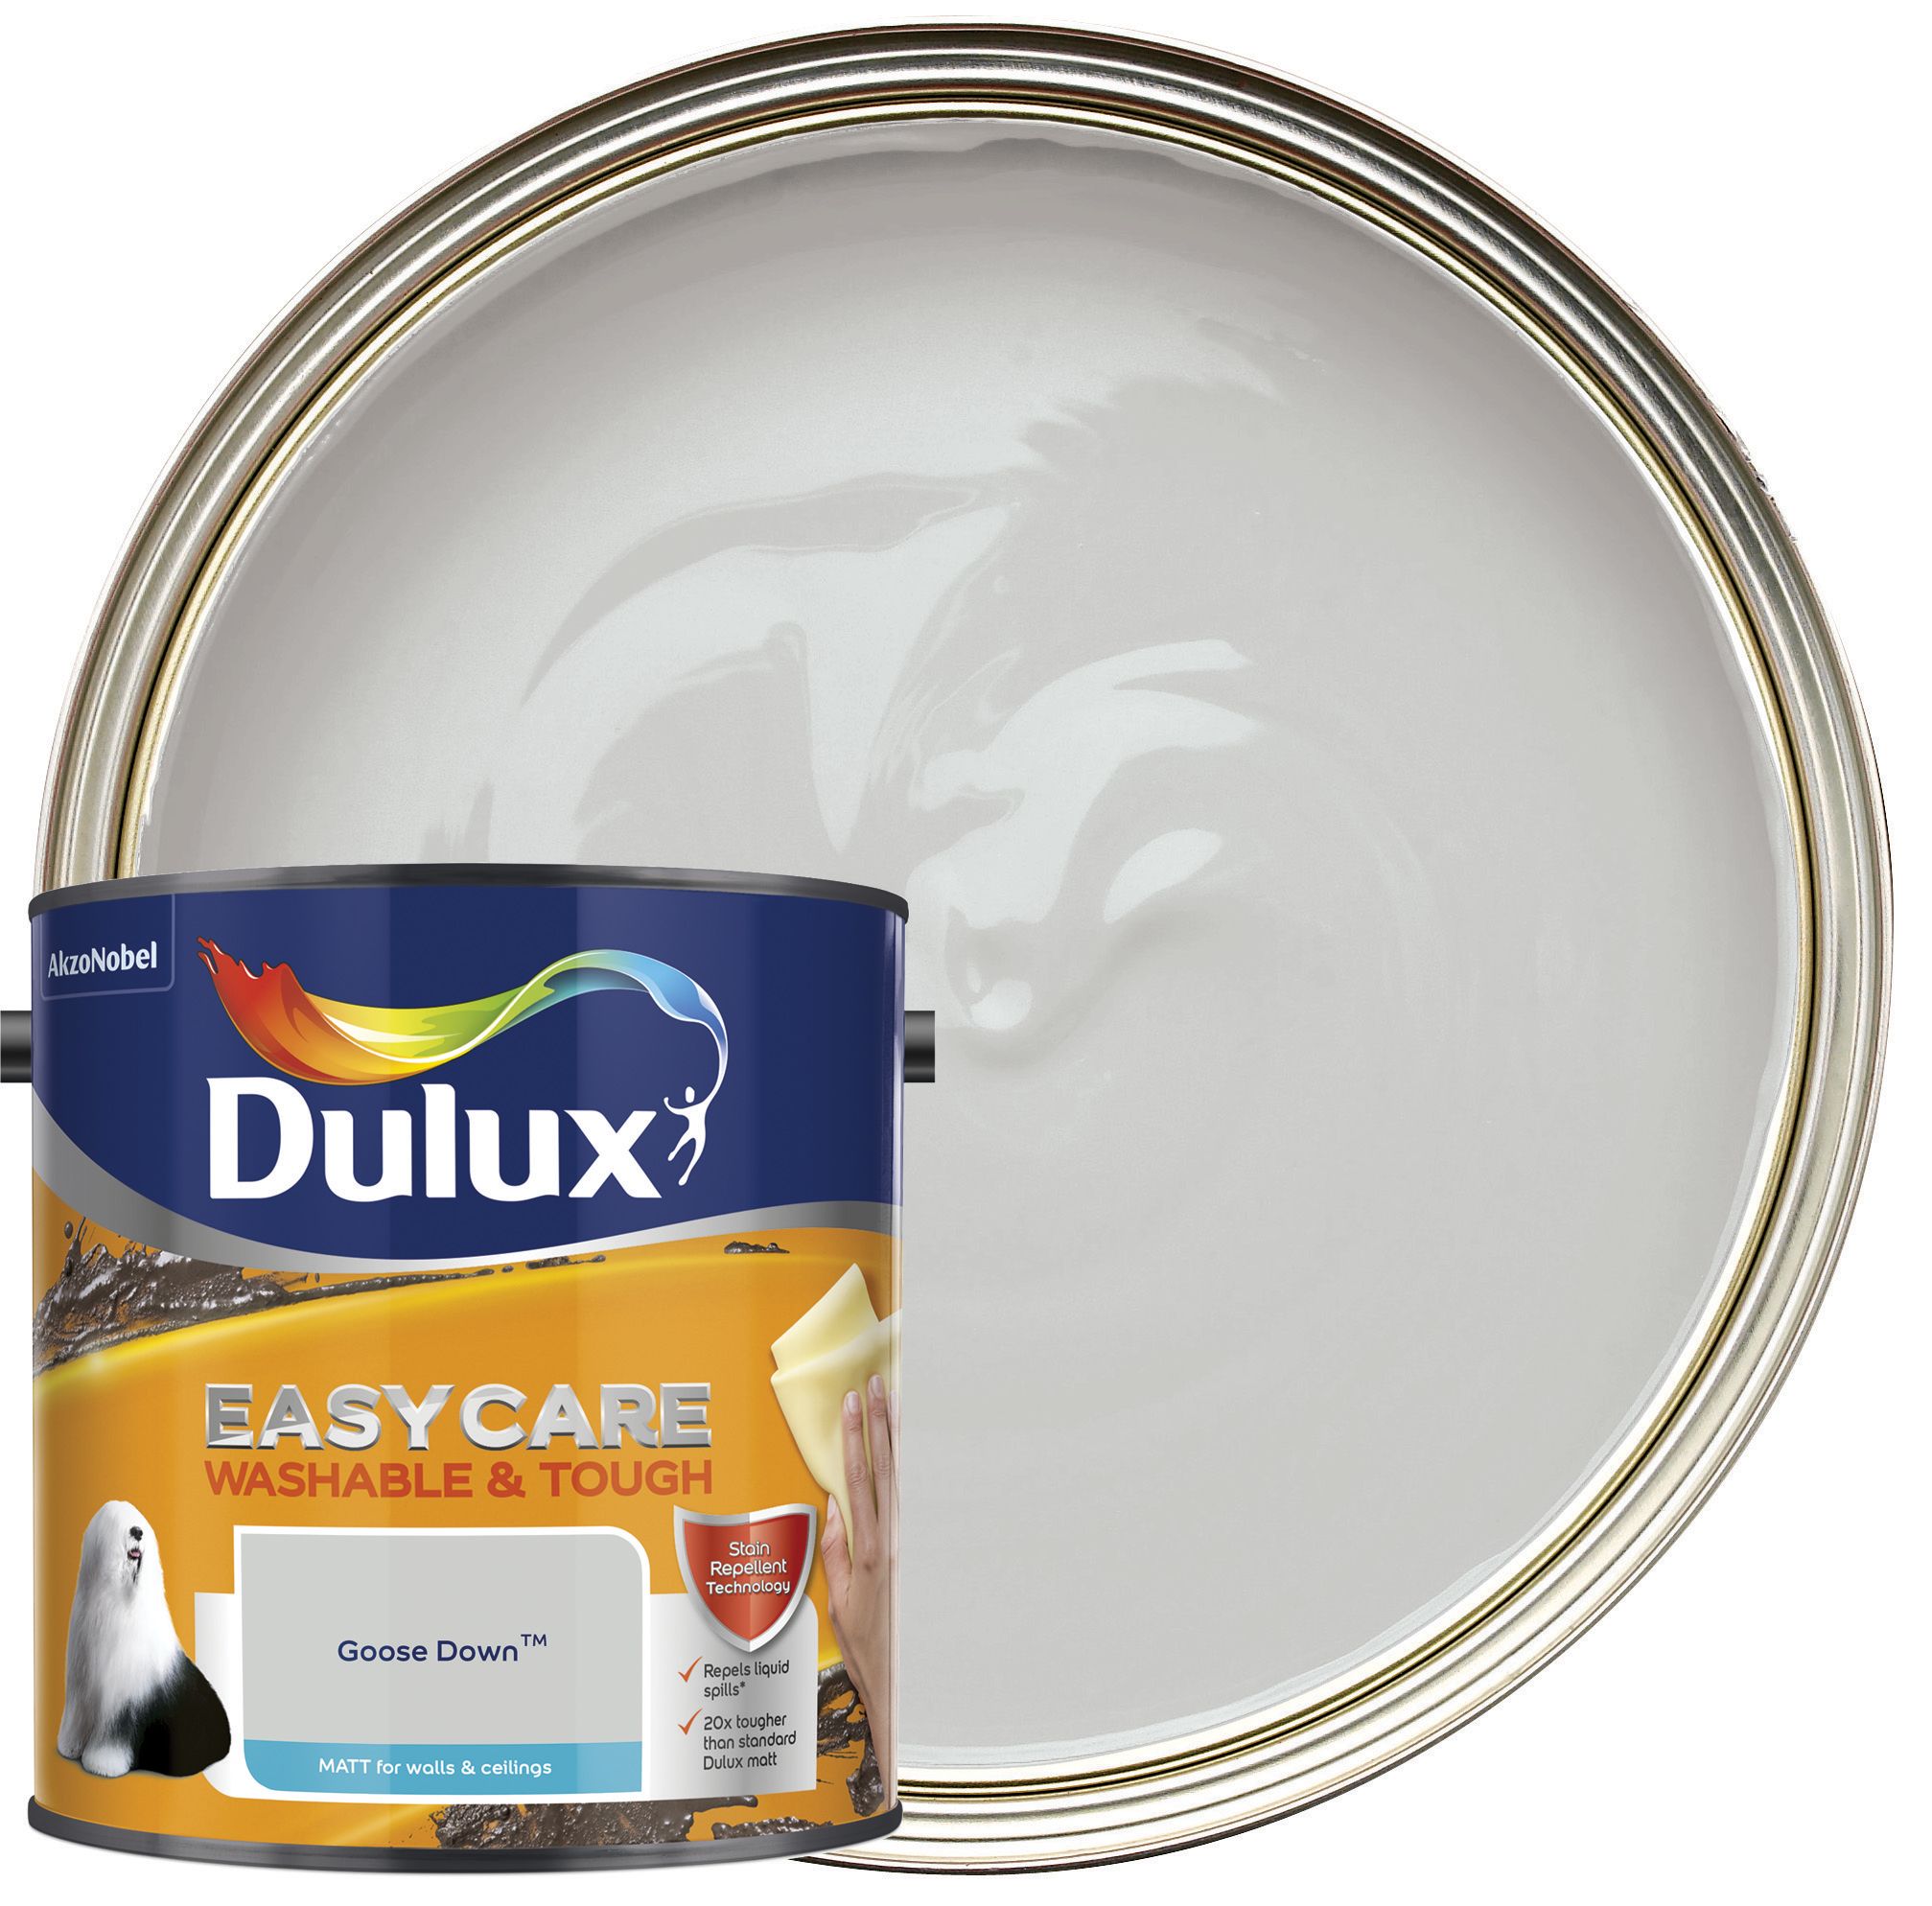 Dulux Easycare Washable & Tough Matt Emulsion Paint - Goose Down - 2.5L